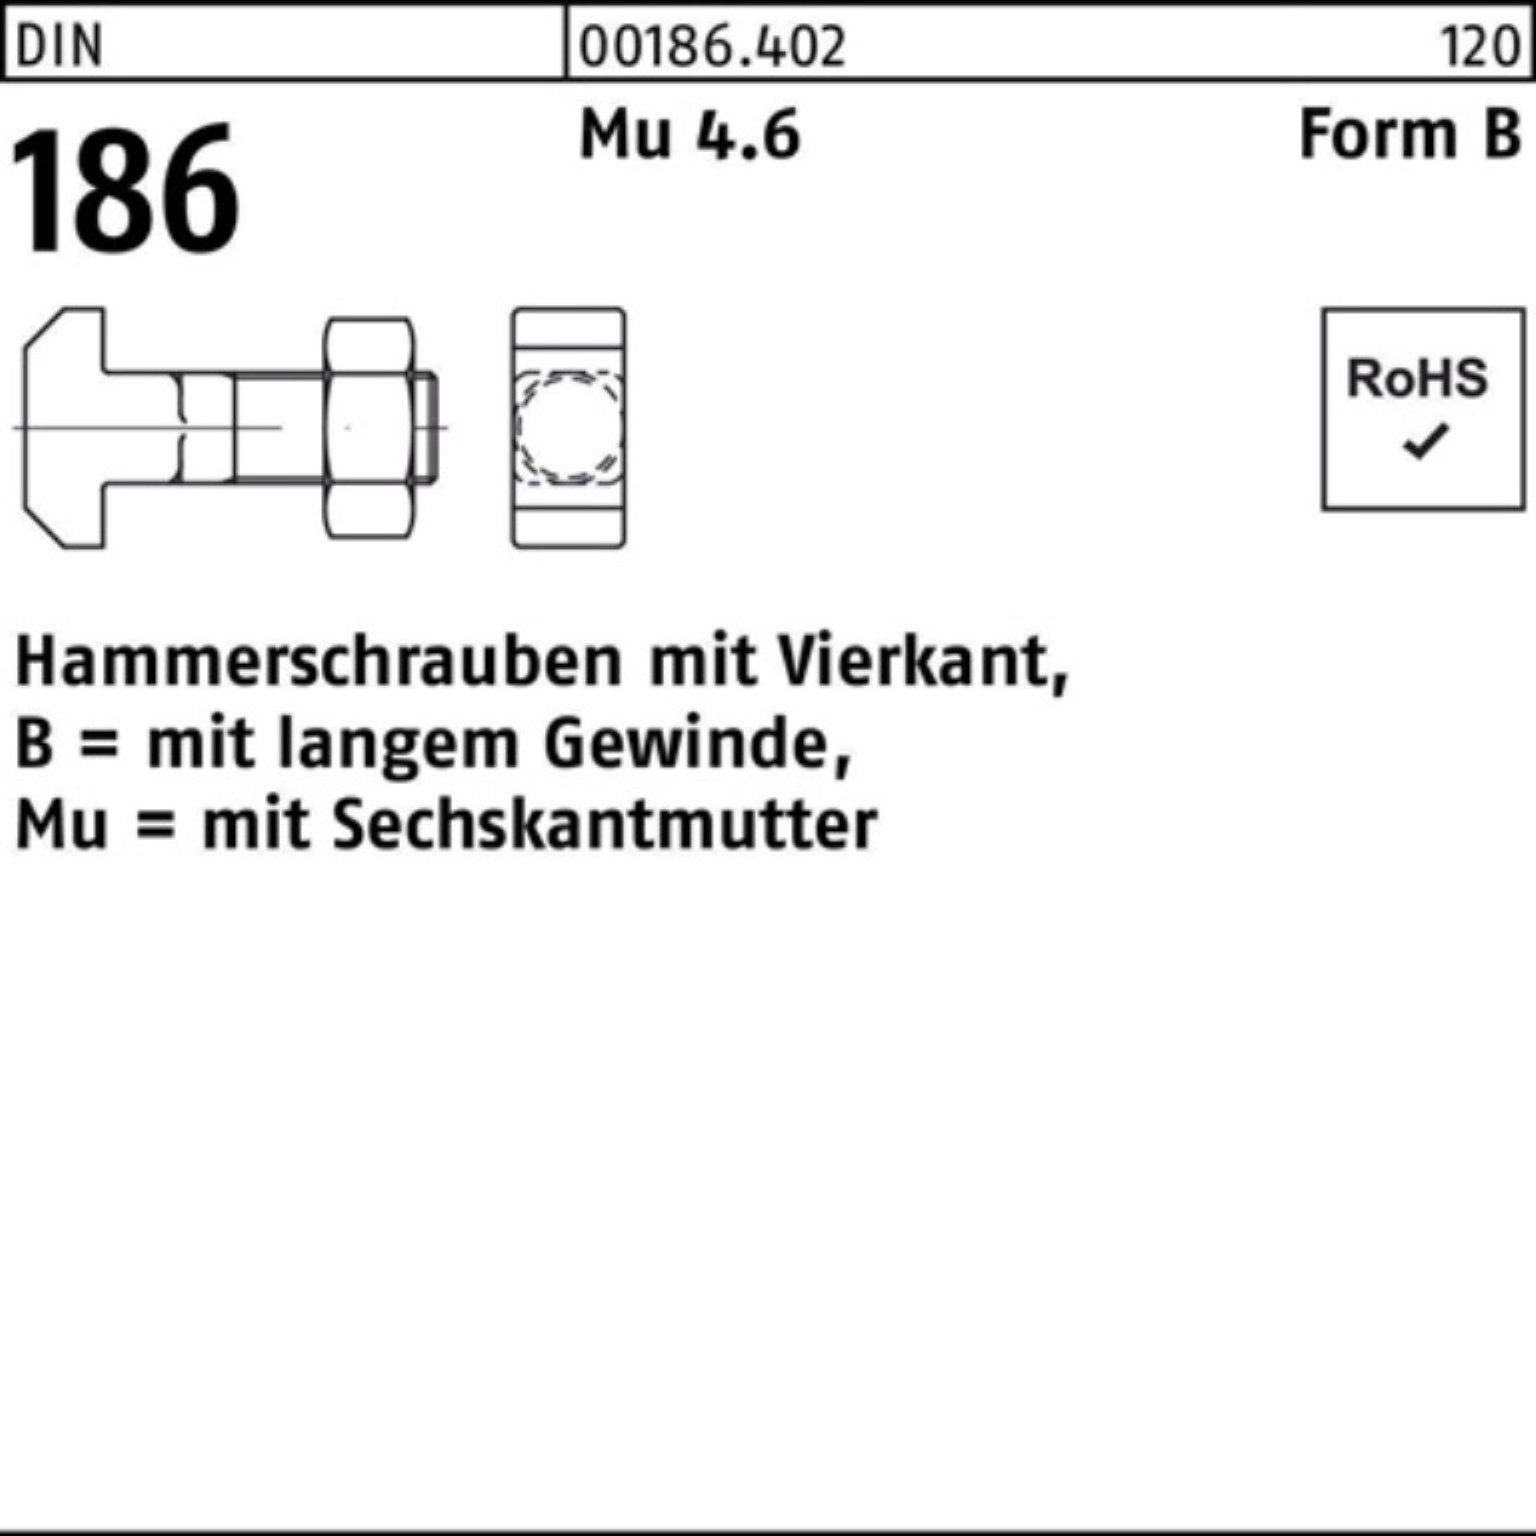 Reyher Schraube 100er Pack 60 BM DIN FormB 186 Hammerschraube 20x Vierkant 6-ktmutter